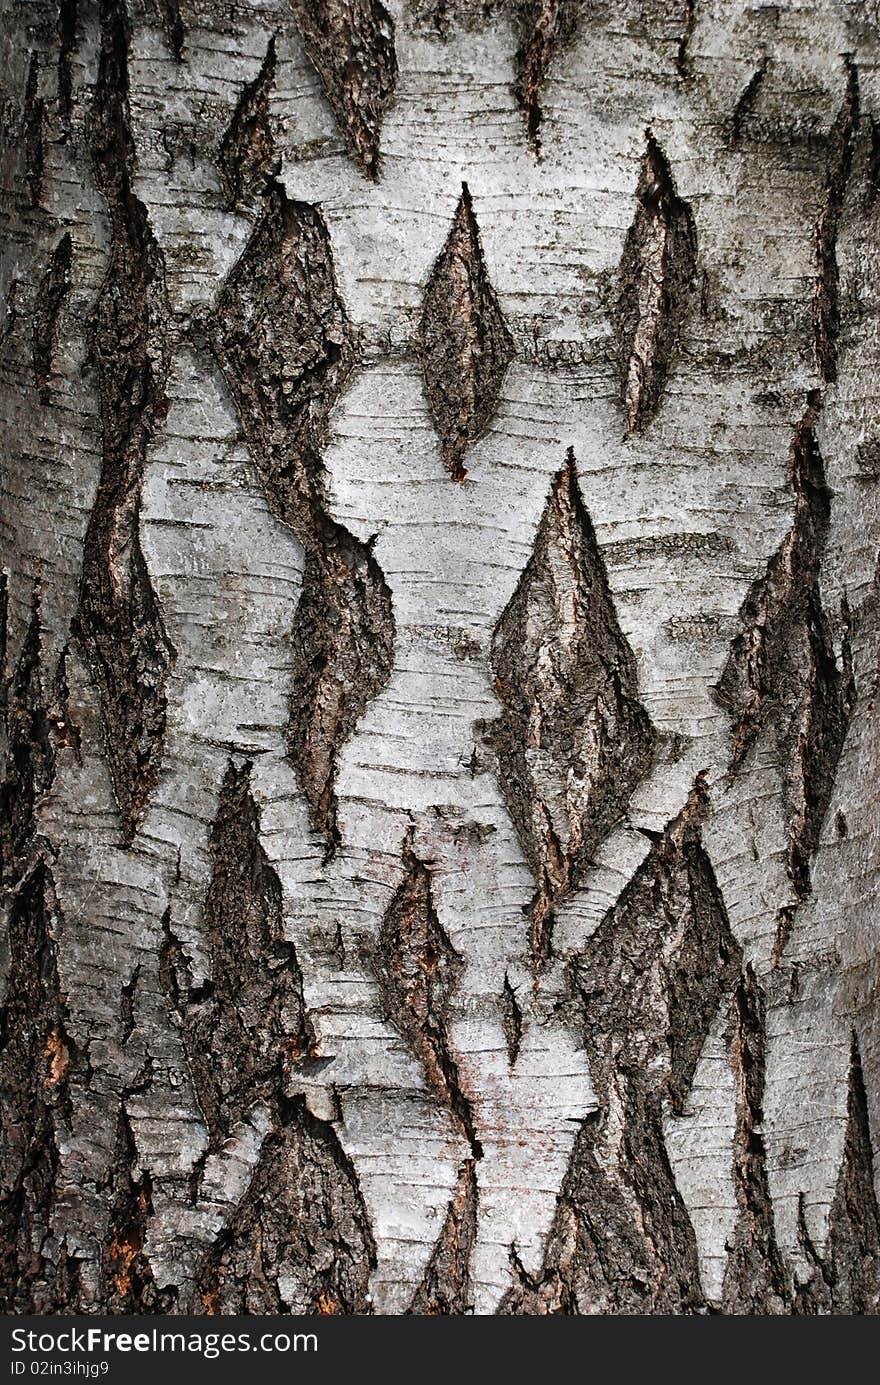 A close-up of an birch tree's bark. A close-up of an birch tree's bark